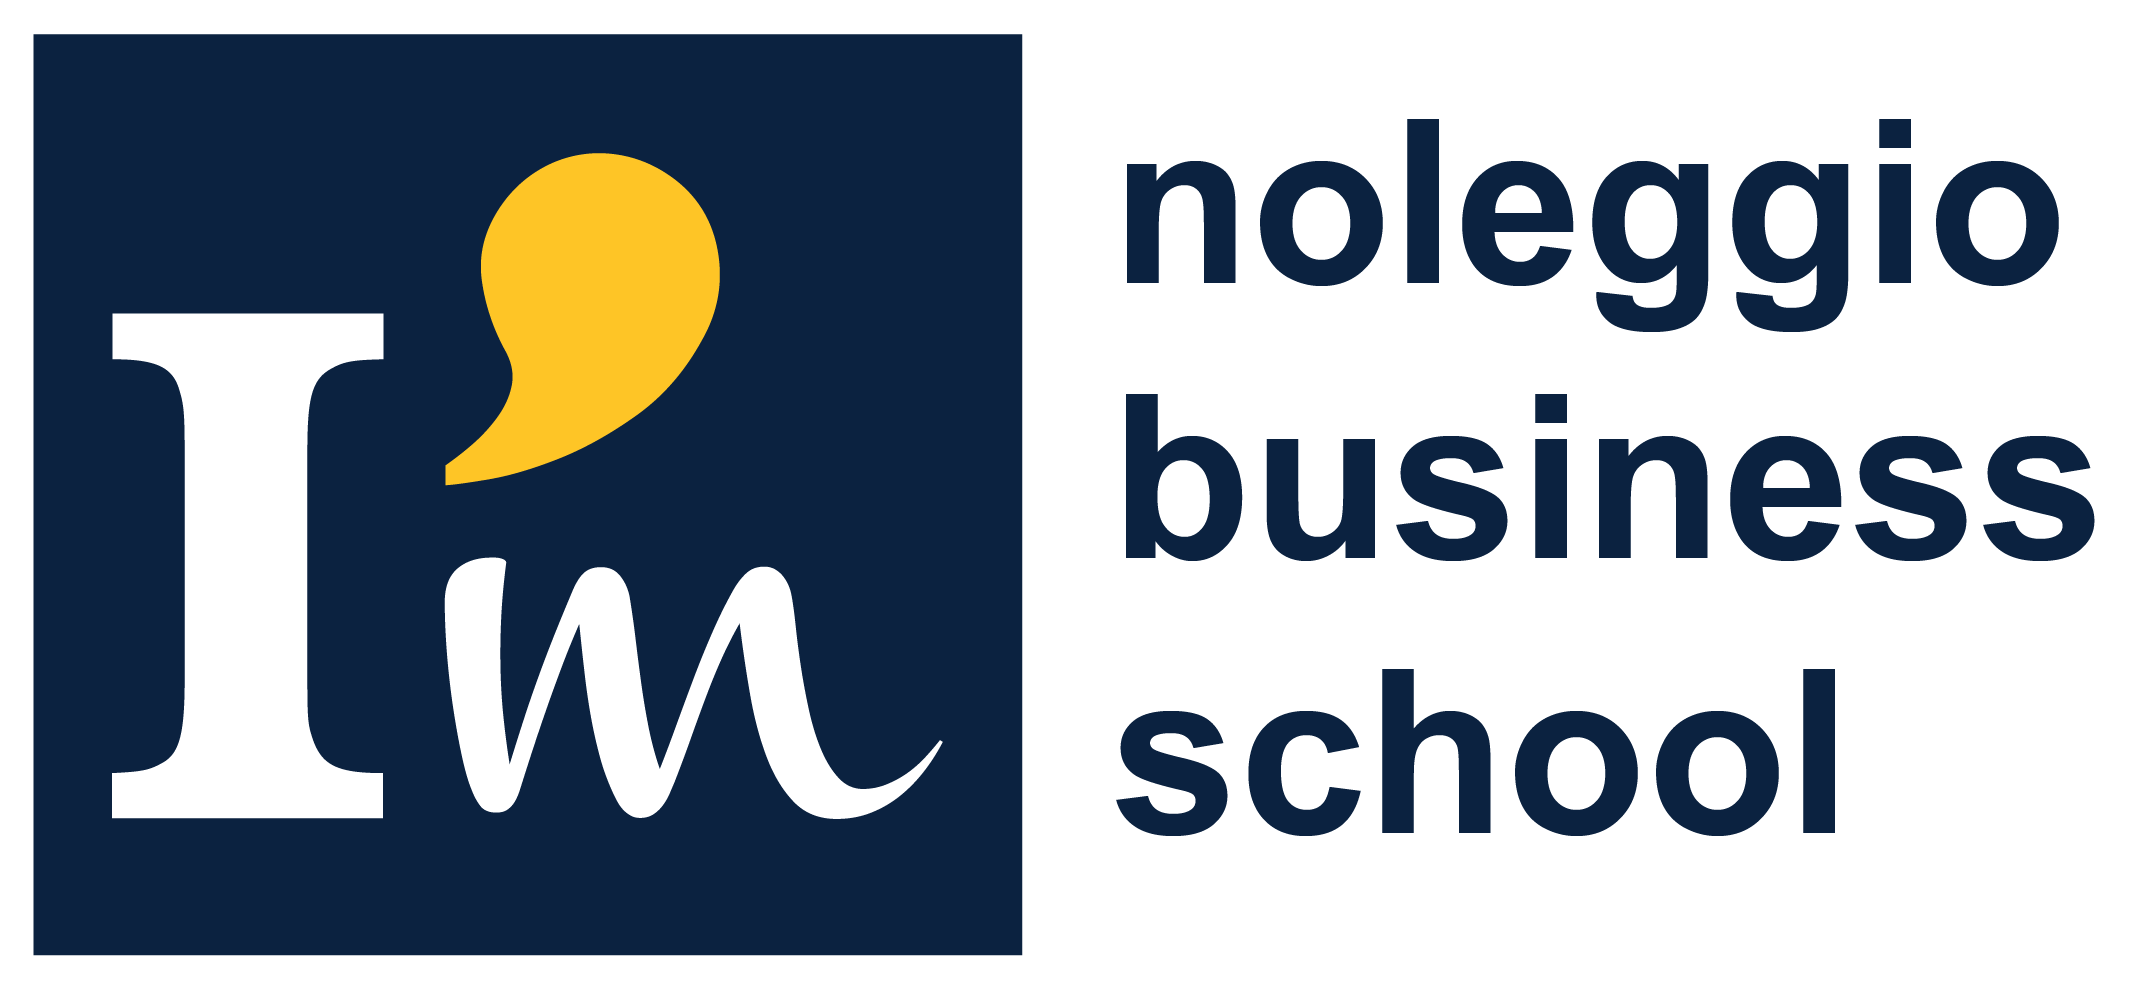 Noleggio Business School